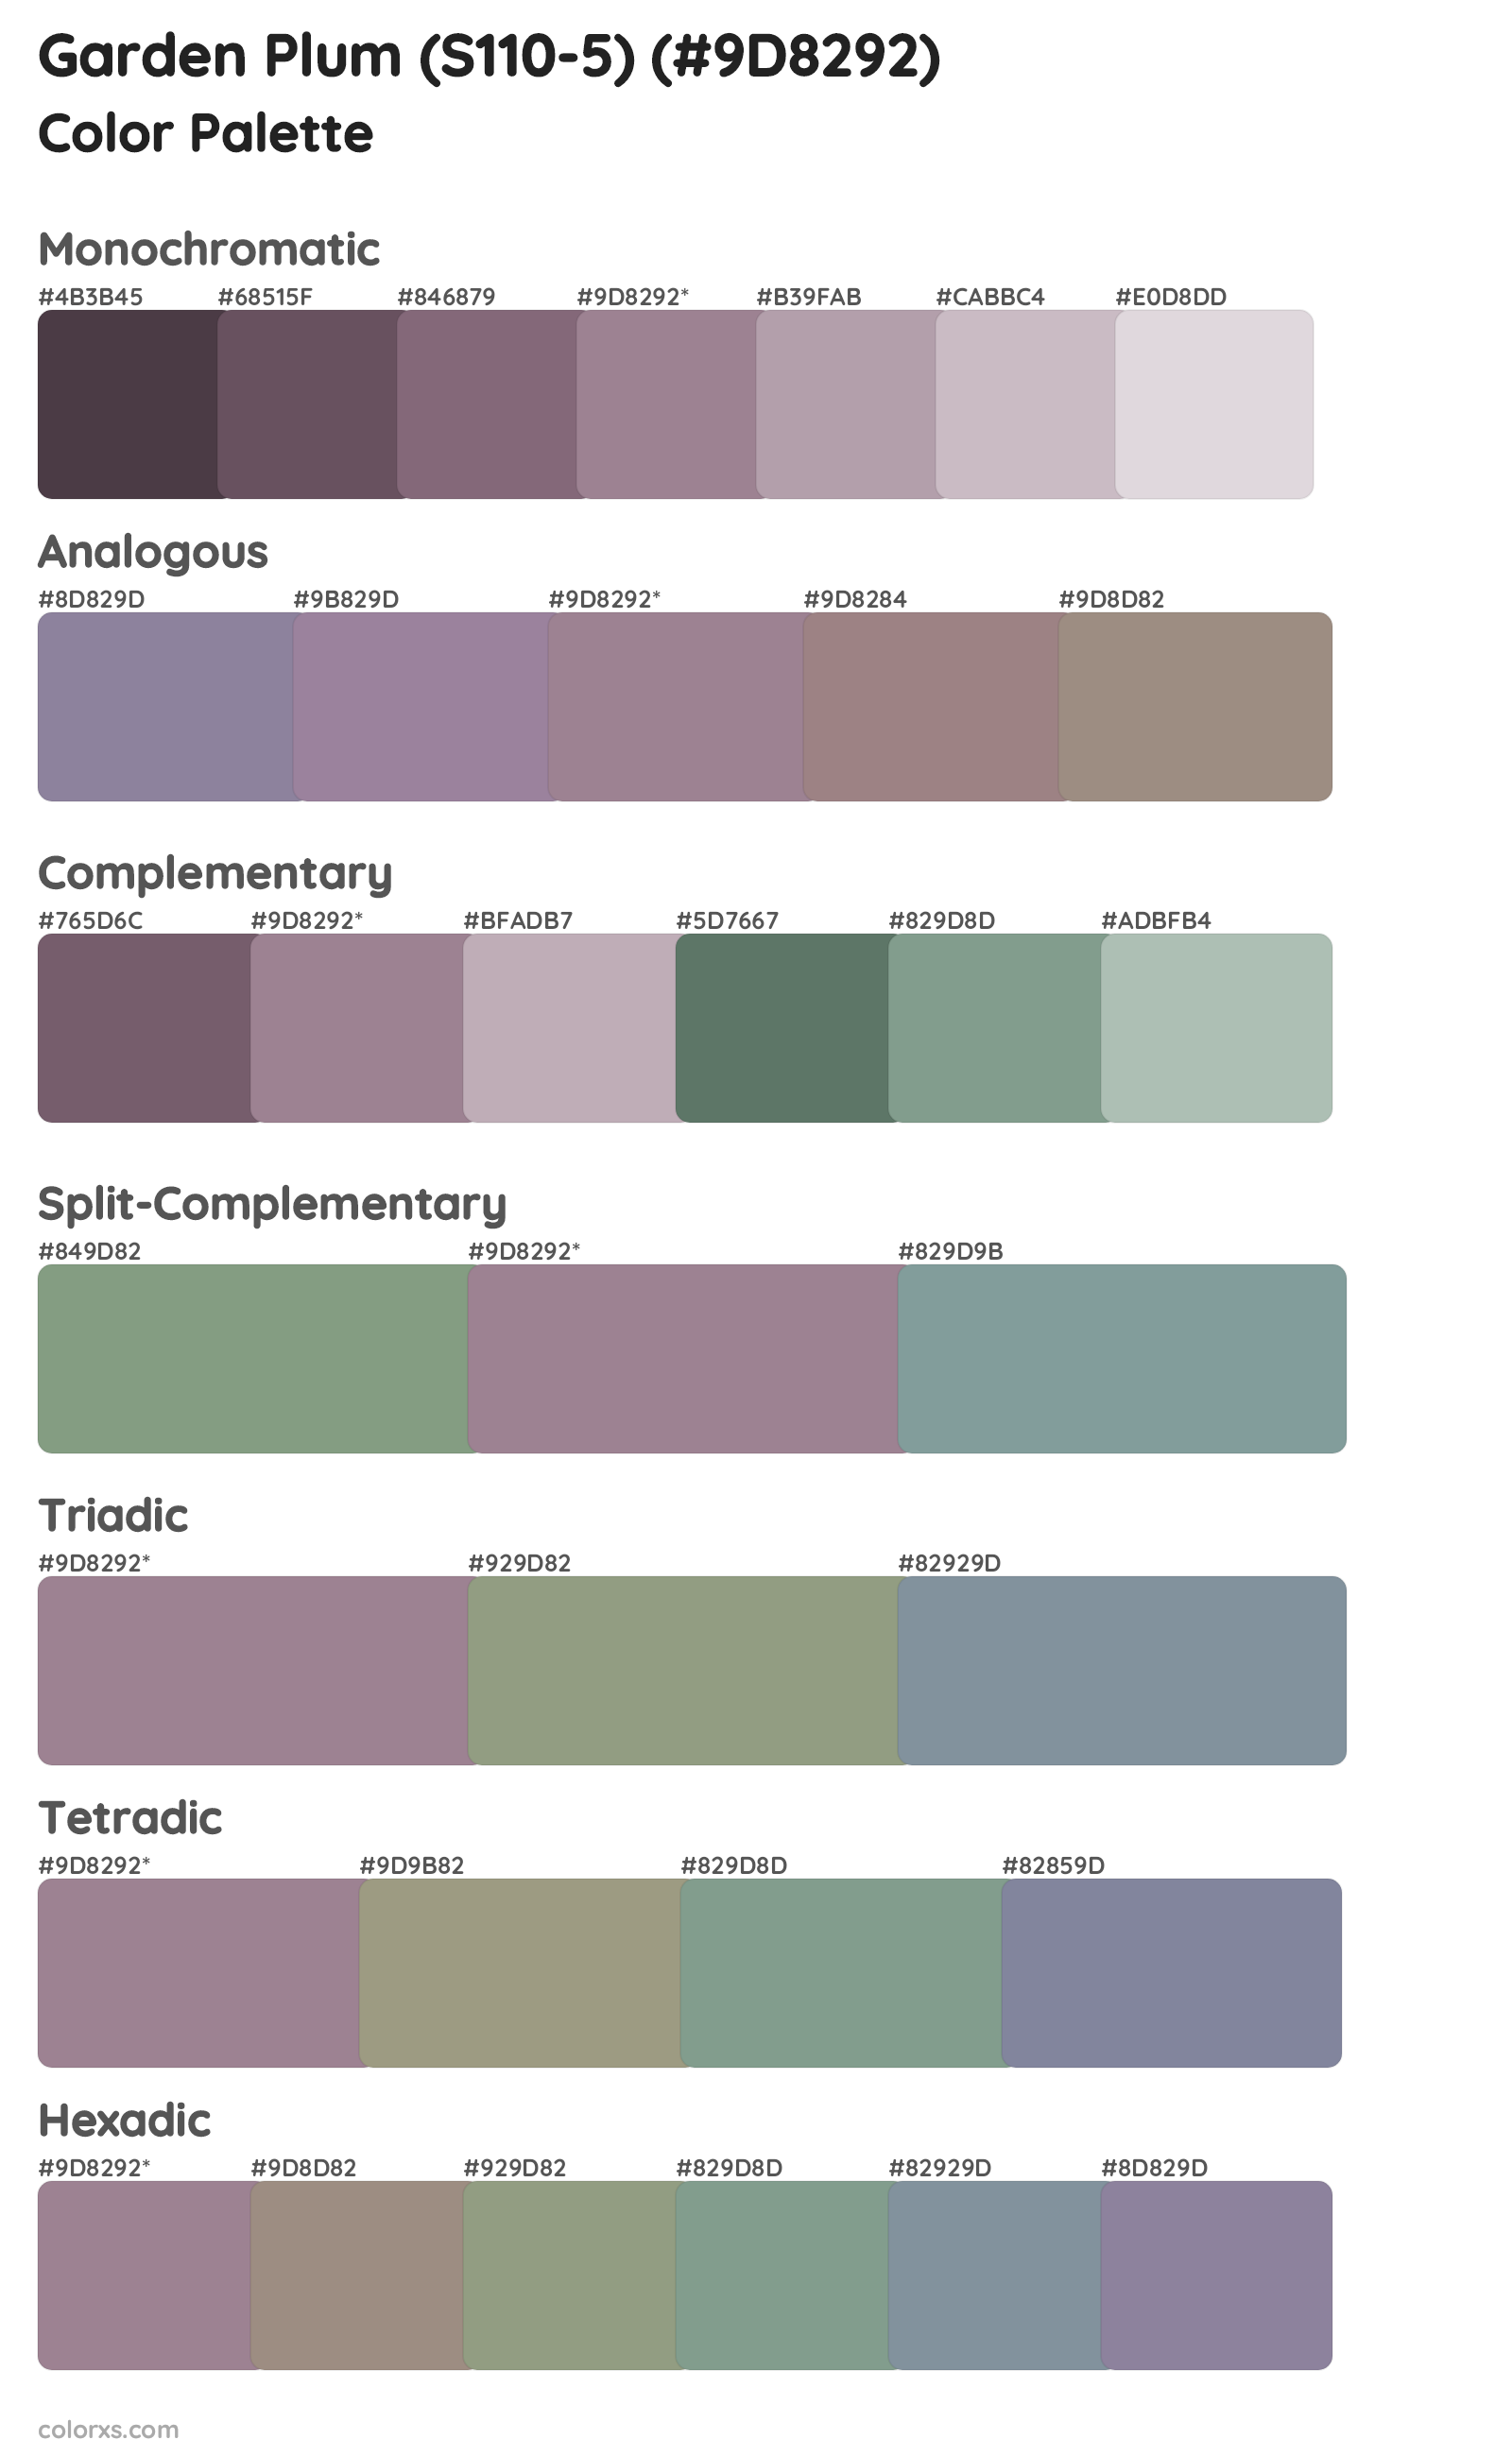 Garden Plum (S110-5) Color Scheme Palettes